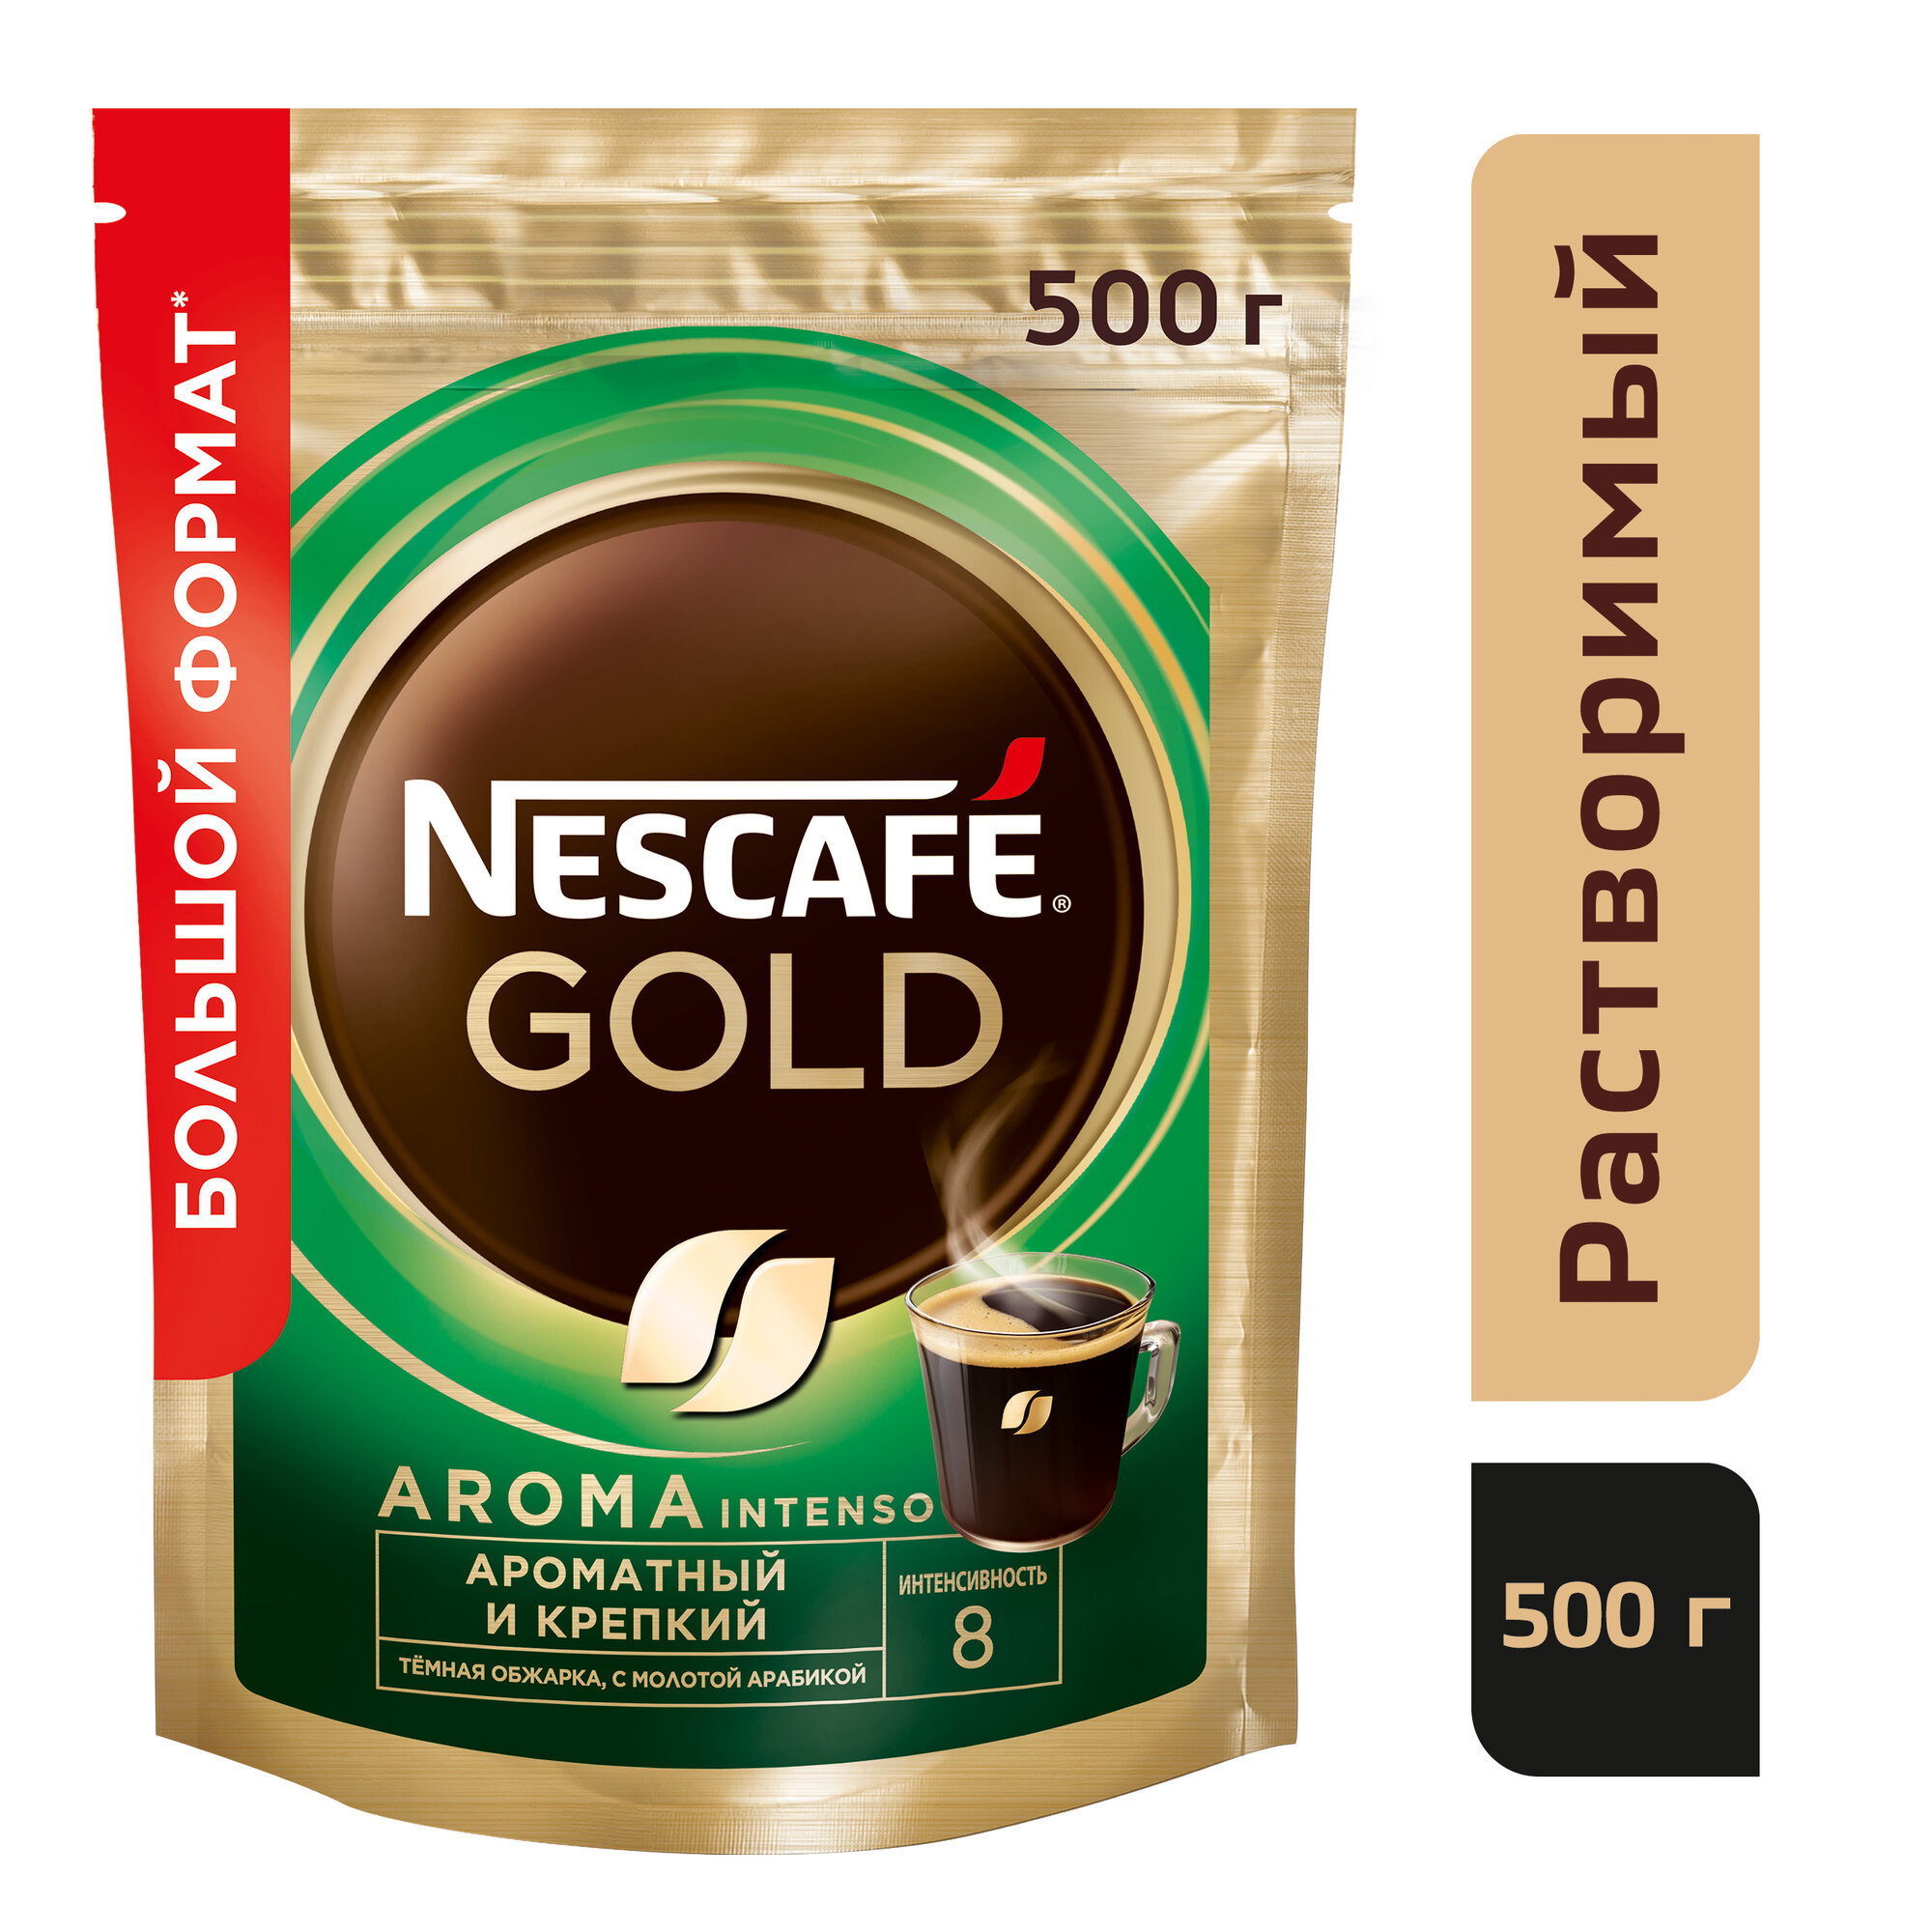 Кофе растворимый Nescafe Gold Aroma Intenso c молотым кофе, пакет, 500 г